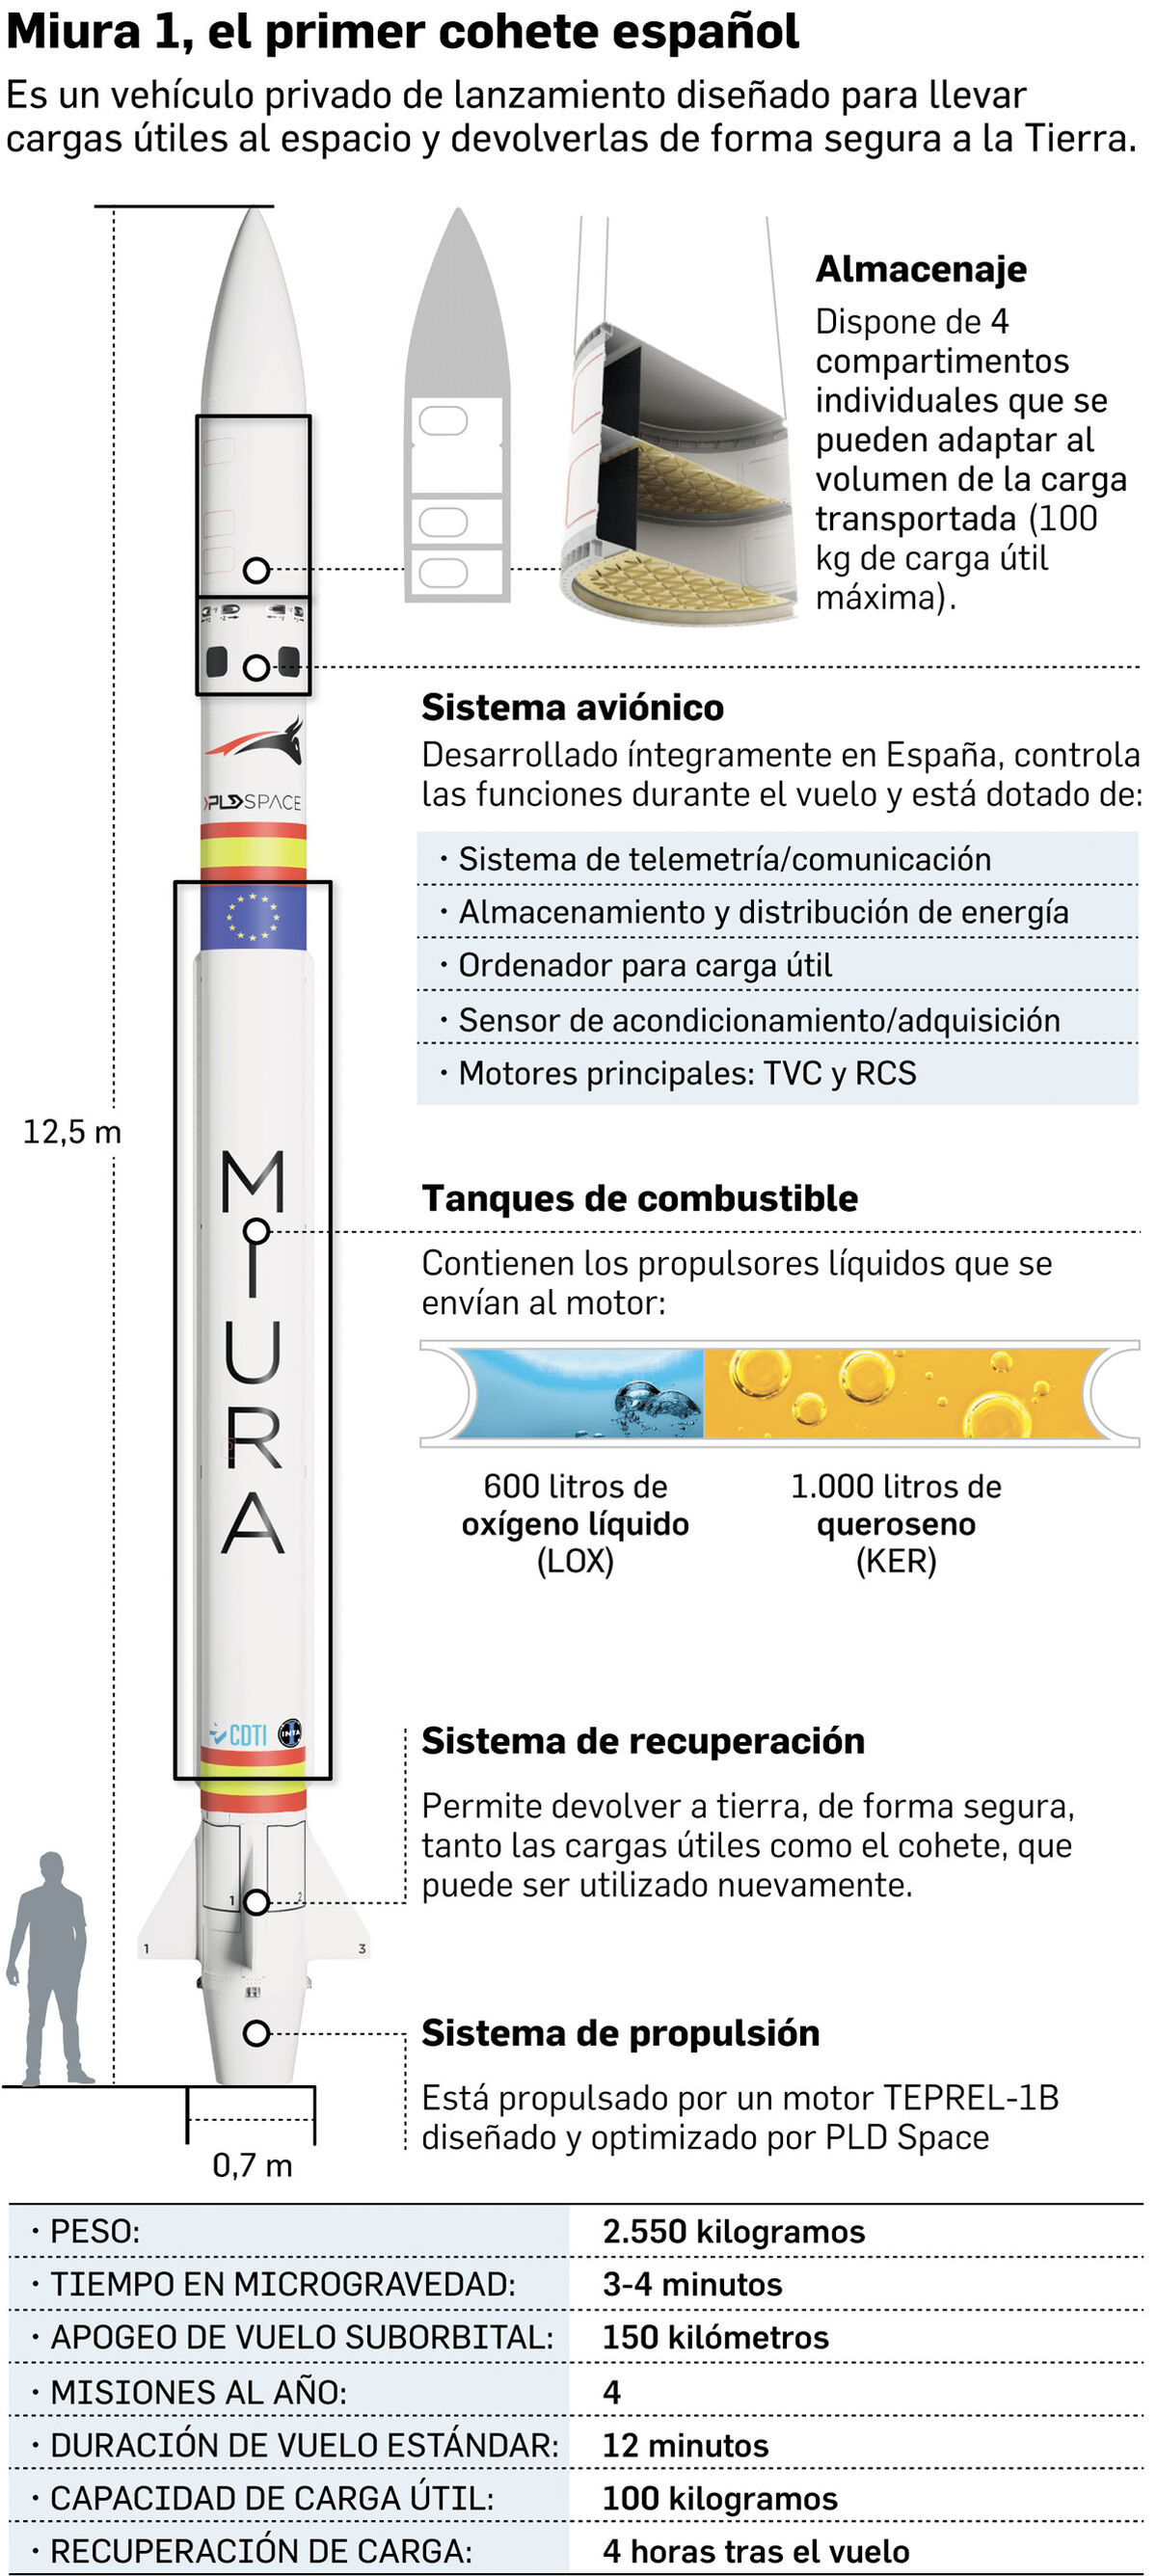 El cohete Miura 1 volará en las próximas horas desde Huelva - Miércoles, 31 de Mayo — 06:30 Caracteristicas-Miura-Fuente-PLD-Space_1794430781_184781303_1200x2673